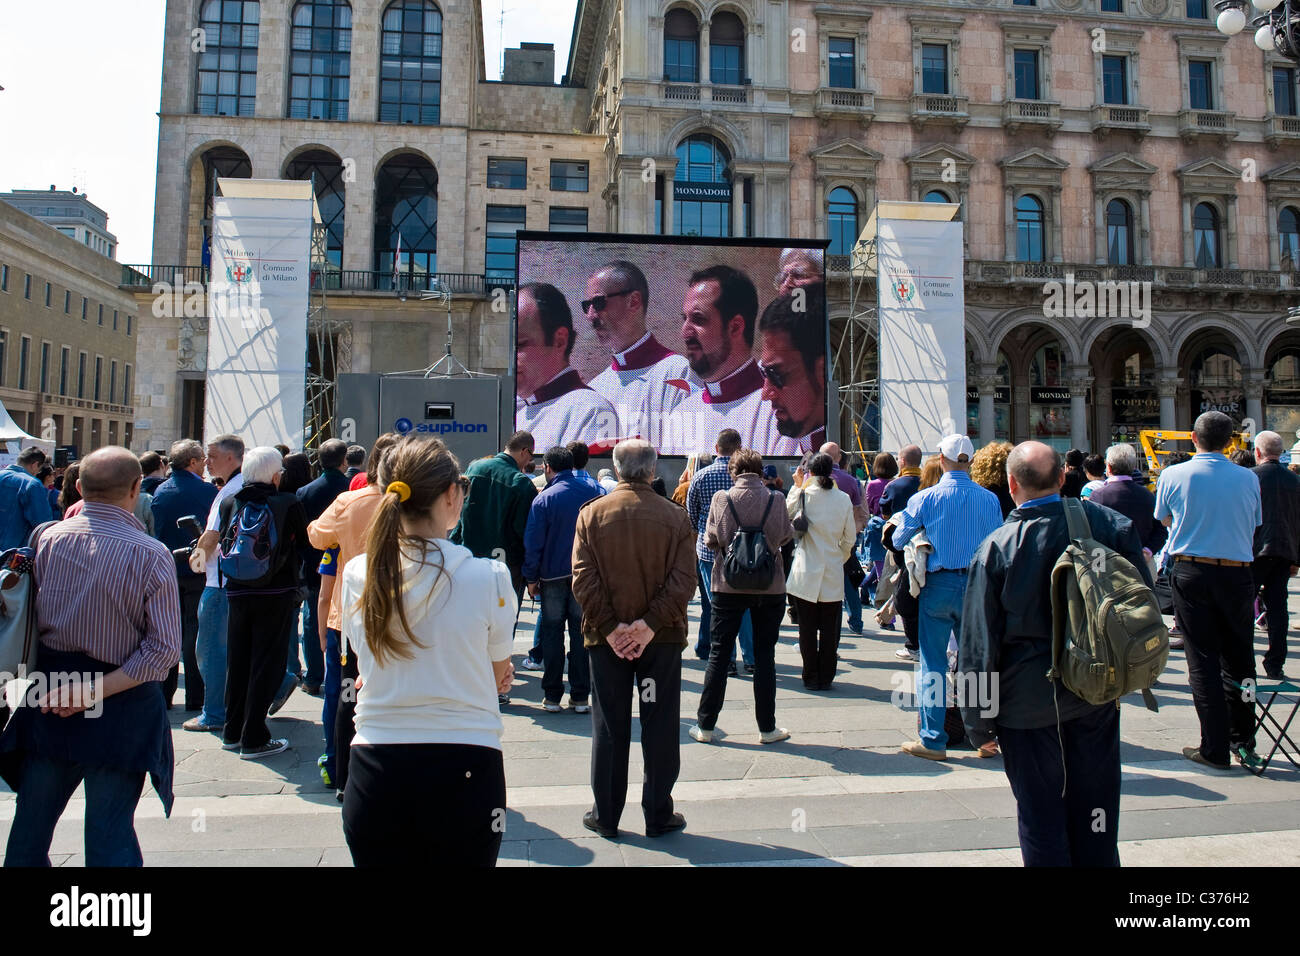 01.05.2011, la beatificación de Juan Pablo II, pasaron en la pantalla gigante en la plaza del Duomo de Milán, Italia Foto de stock